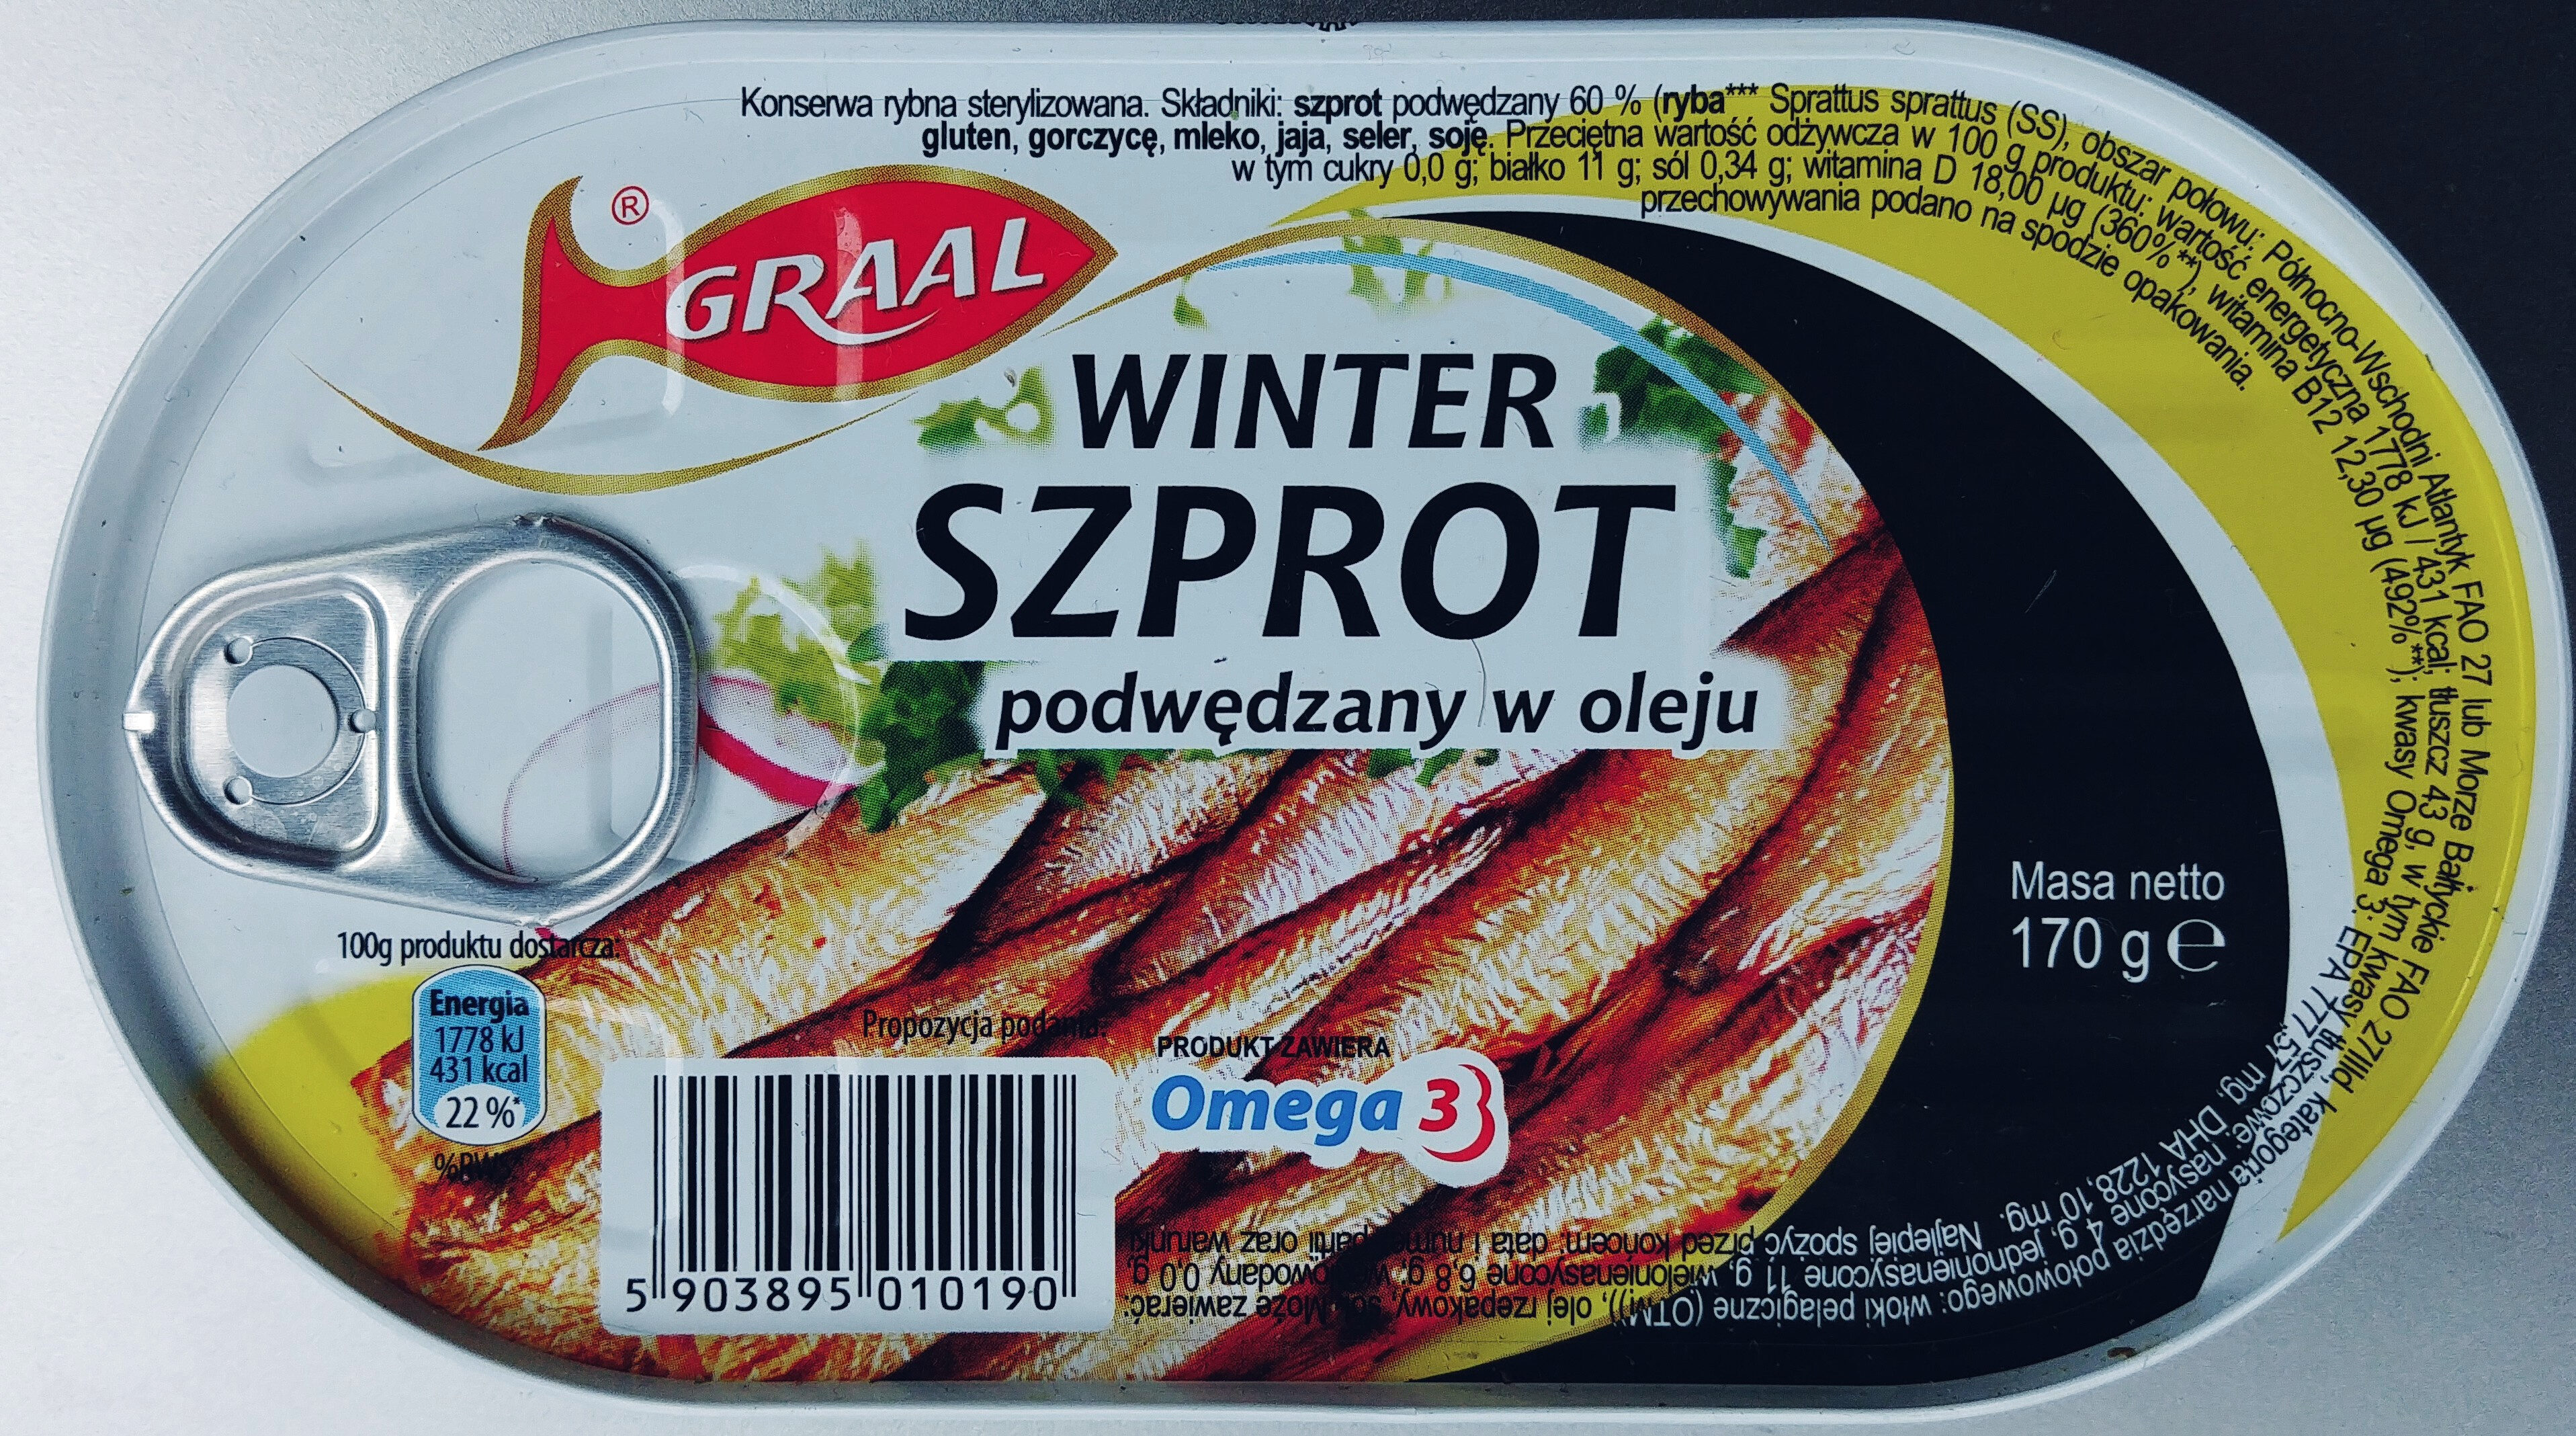 Winter szprot podwędzany w oleju - Product - pl